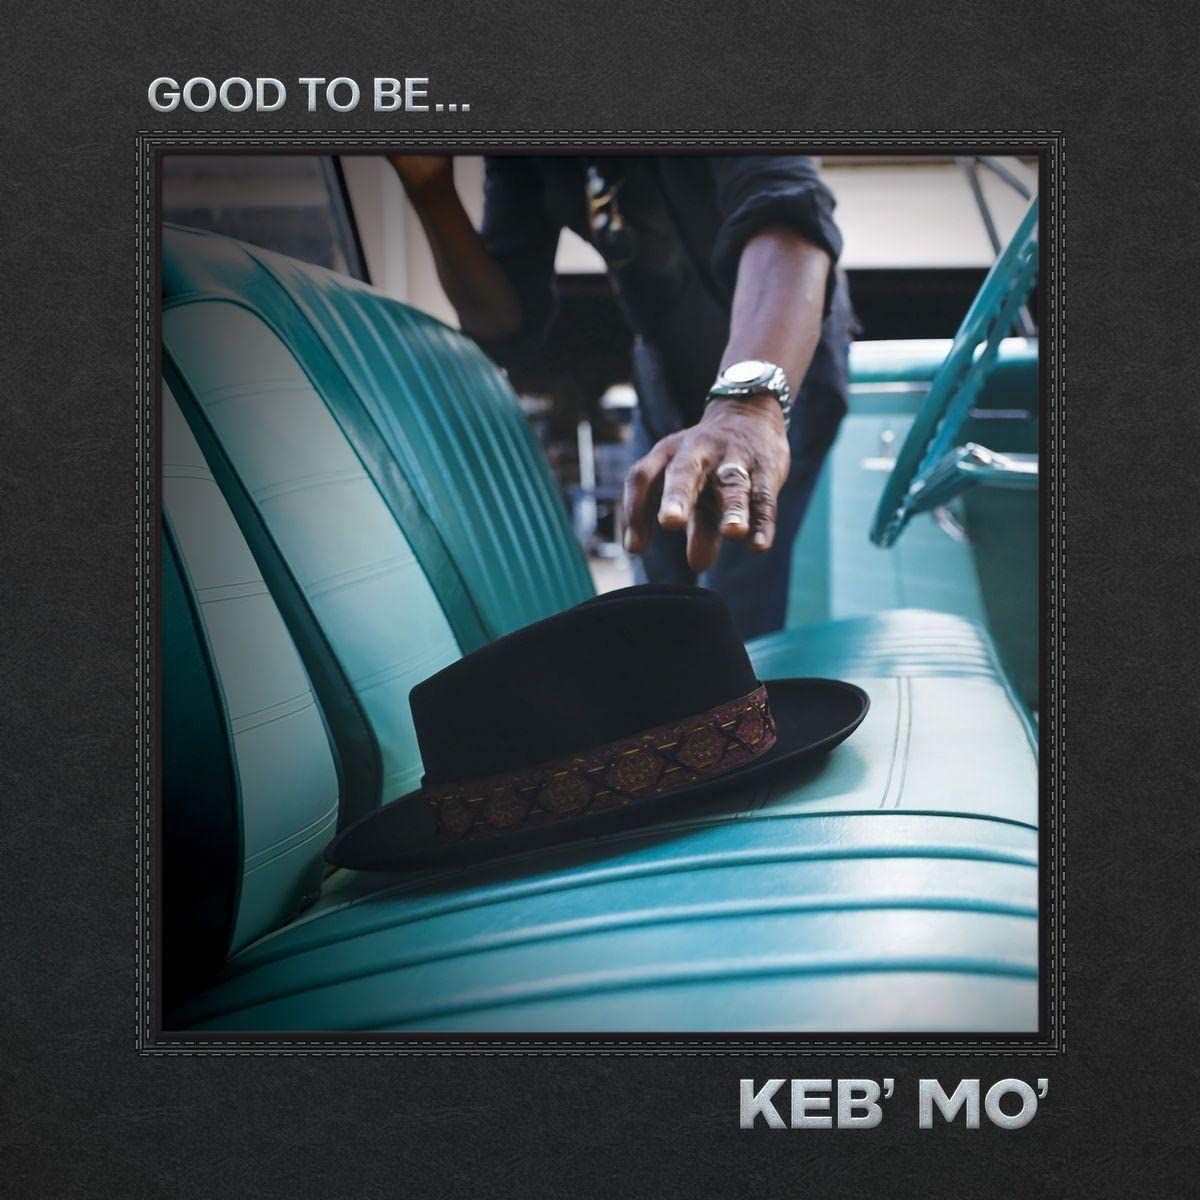 Keb' Mo'-Good to Be... Lp